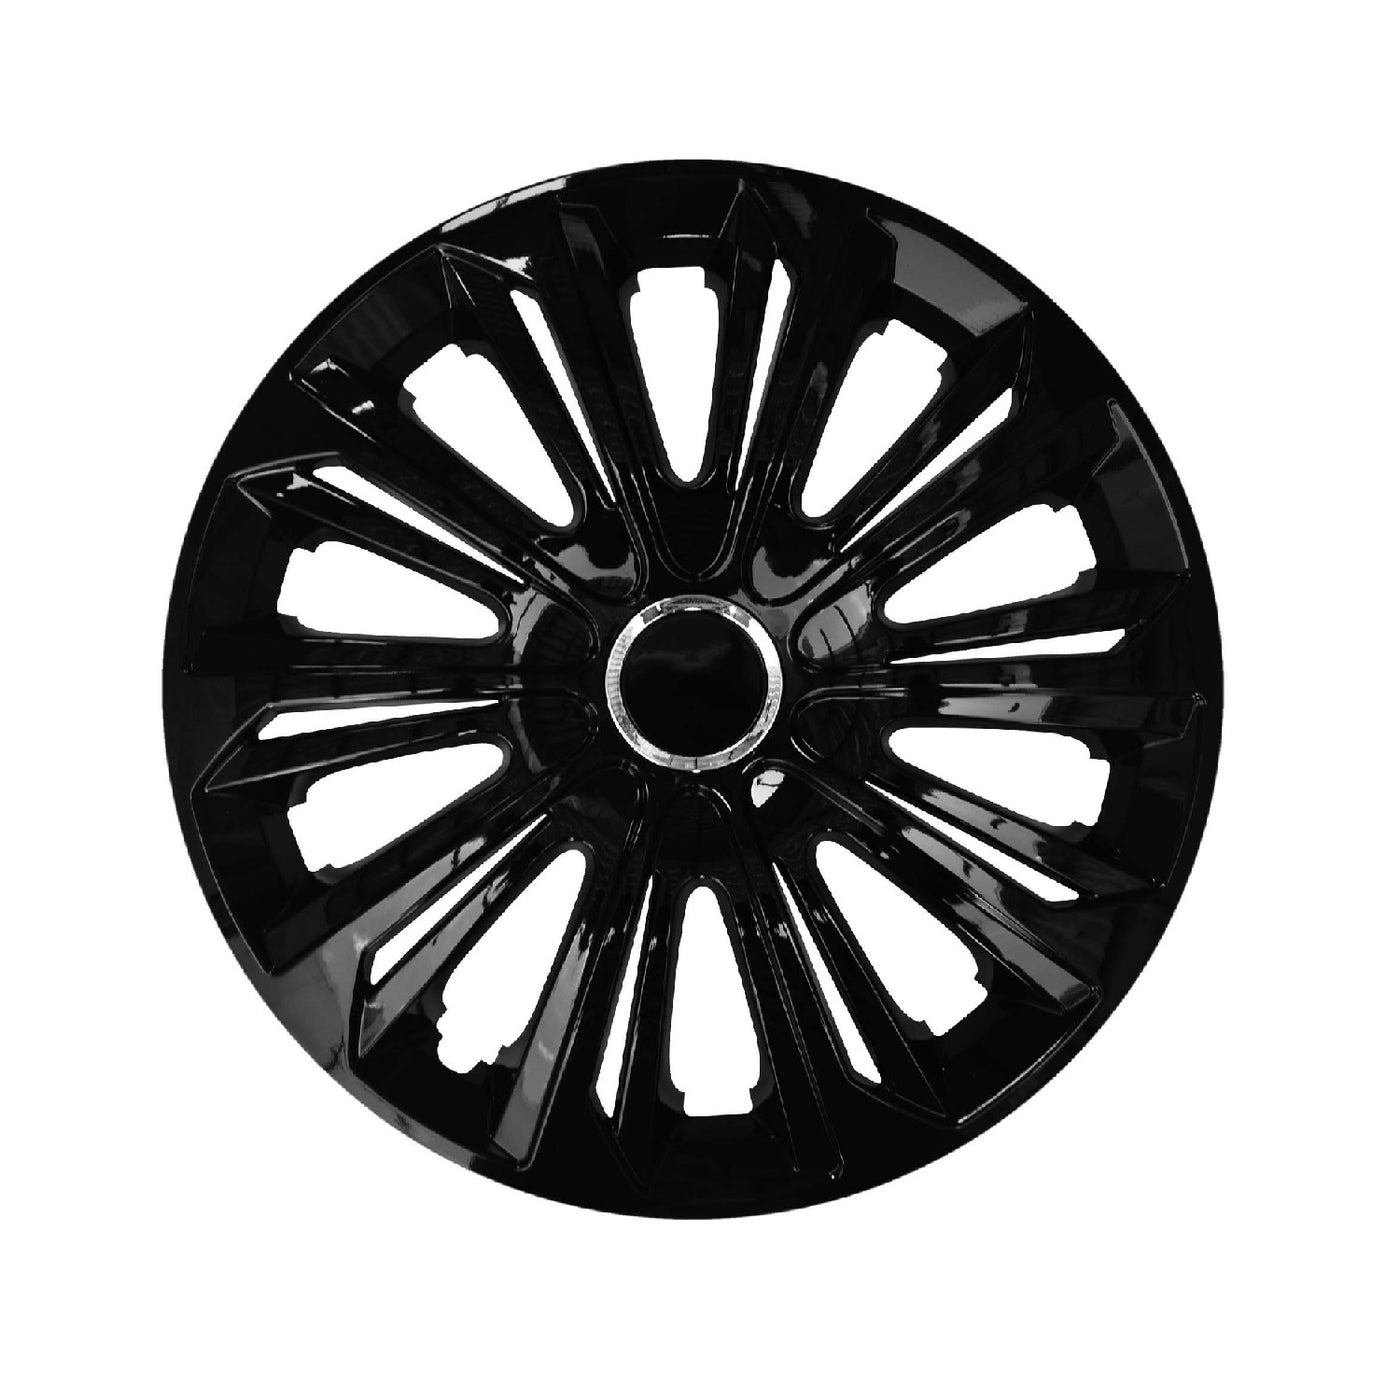 Tapacubos 15 pulgadas NRM Extra Strong Black 4x Wheel Covers